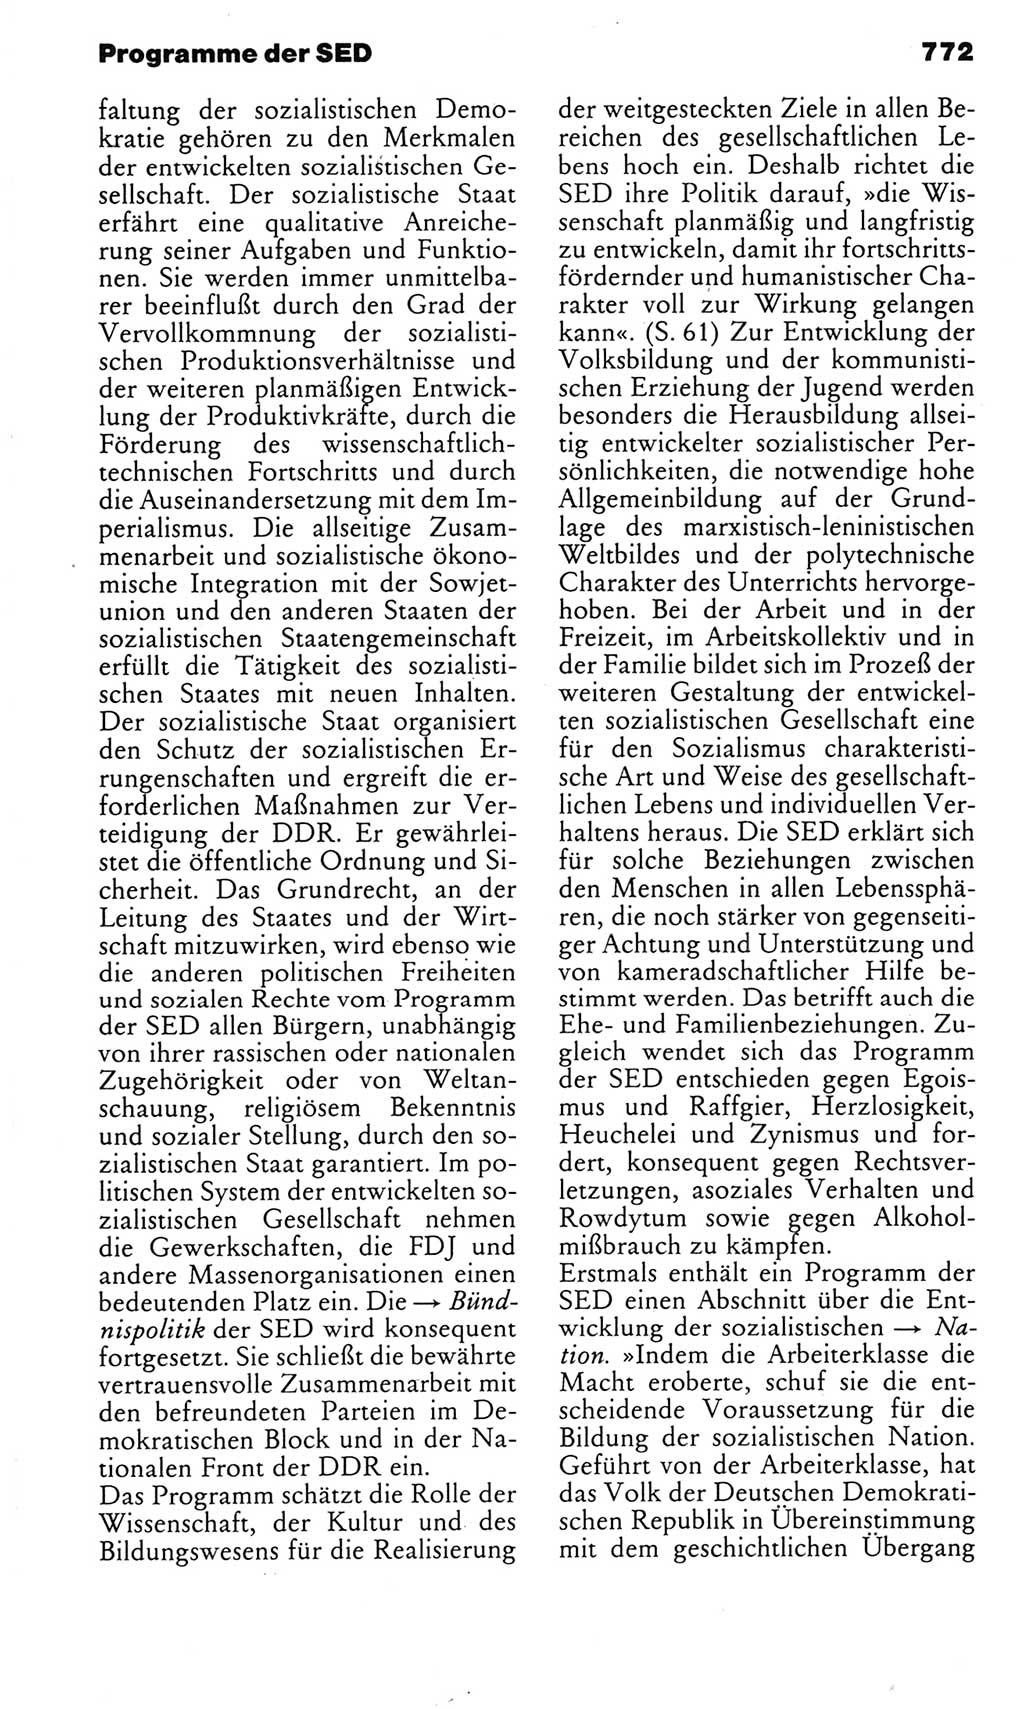 Kleines politisches Wörterbuch [Deutsche Demokratische Republik (DDR)] 1983, Seite 772 (Kl. pol. Wb. DDR 1983, S. 772)